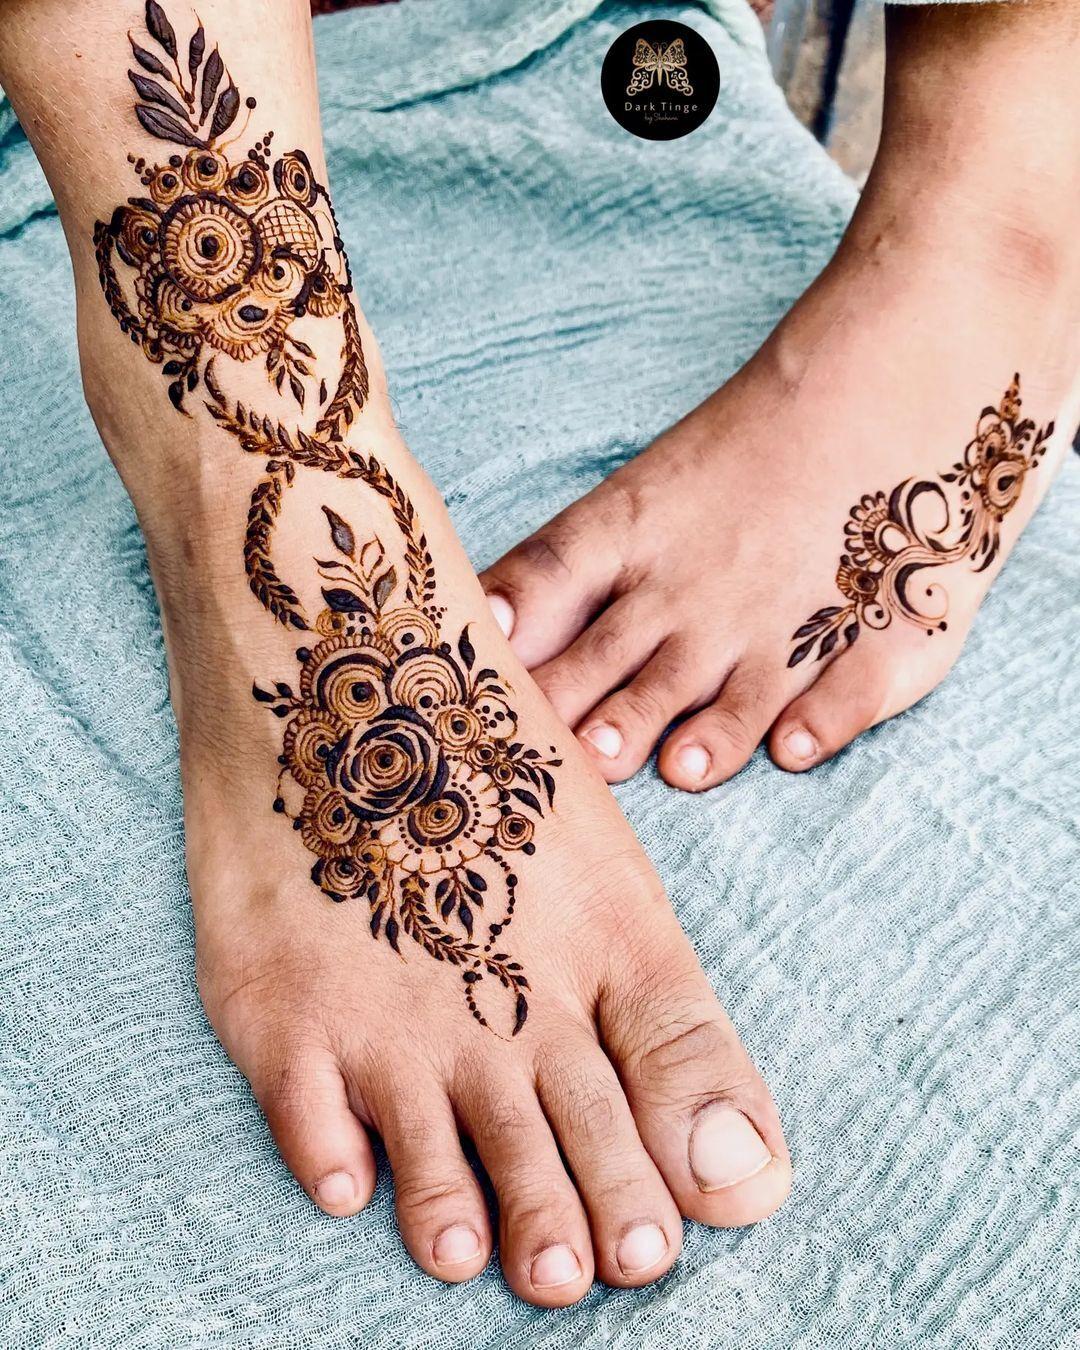 Awesome Leg Mehndi Design/ Beautiful Leg Mehndi Henna Desi… | Flickr